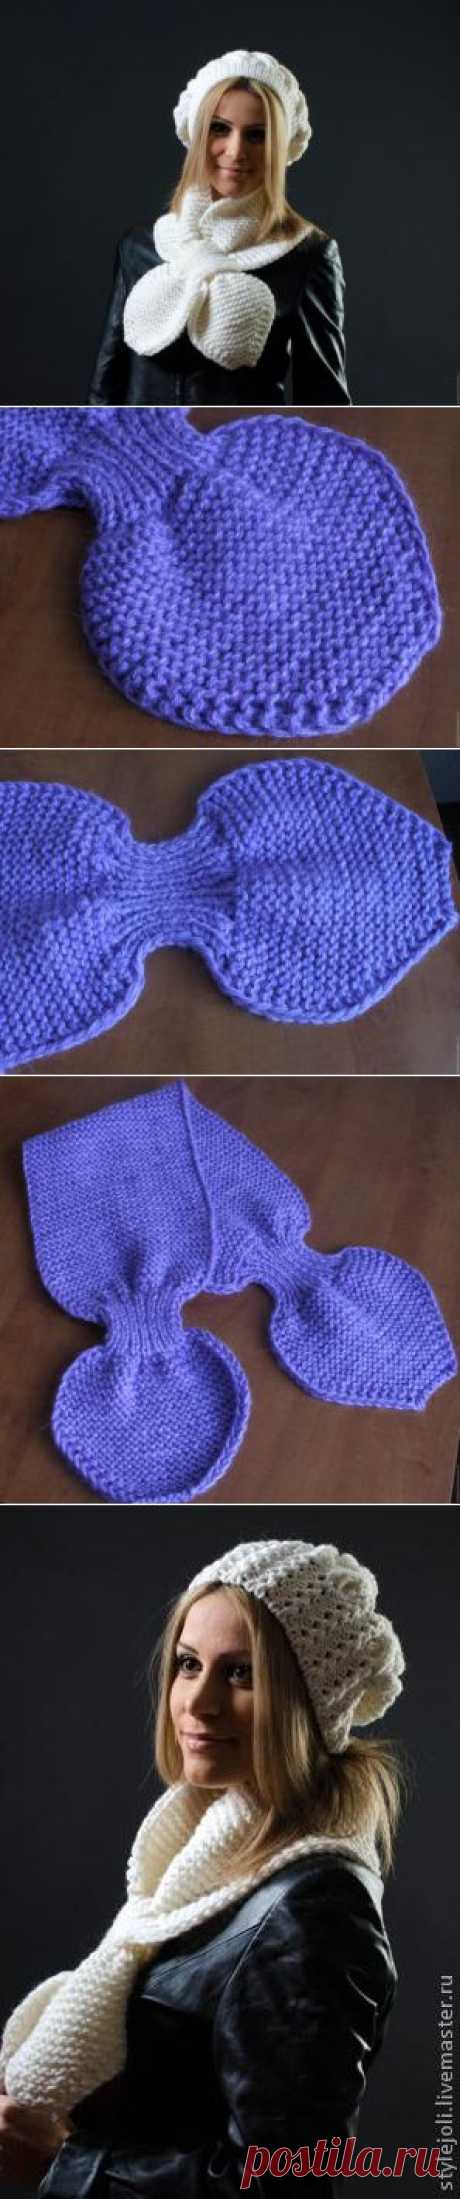 Удобный шарфик- или как сделать подарок своими руками... - Ярмарка Мастеров - ручная работа, handmade